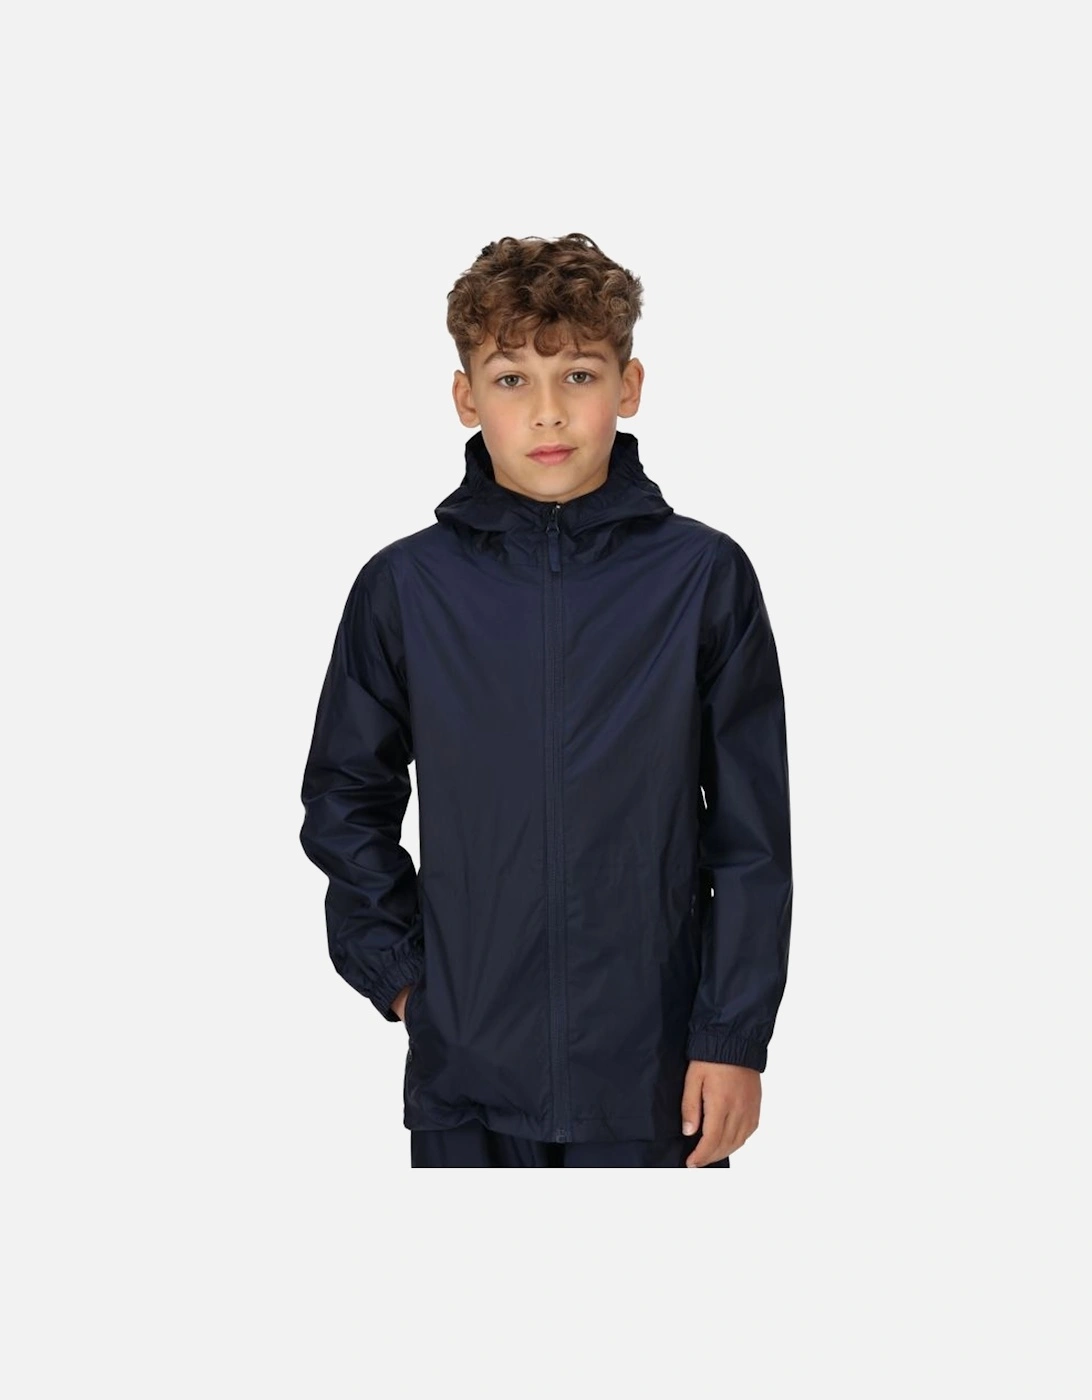 Childrens/Kids Packaway Raincoat